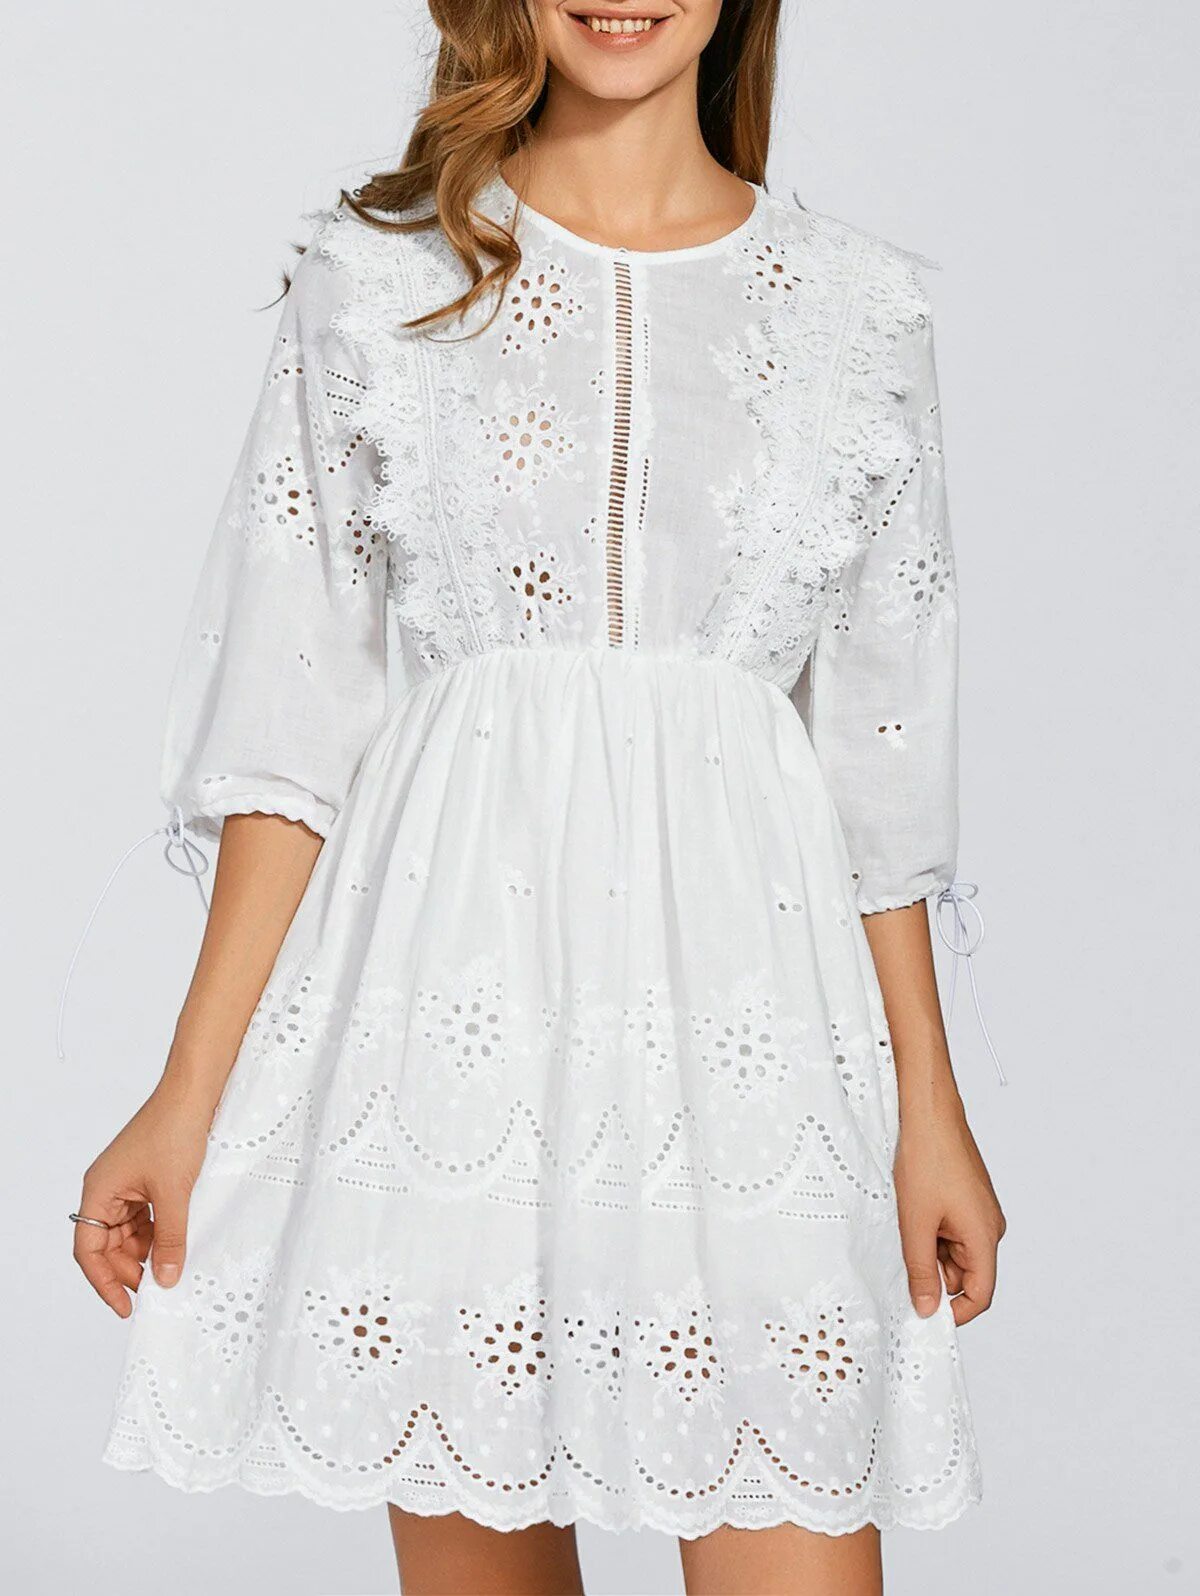 Белое платье из хлопка. Белое платье хлопок. Платье хлопок с кружевом. Платье из хлопка с кружевом. Белое хлопковое платье с кружевом.